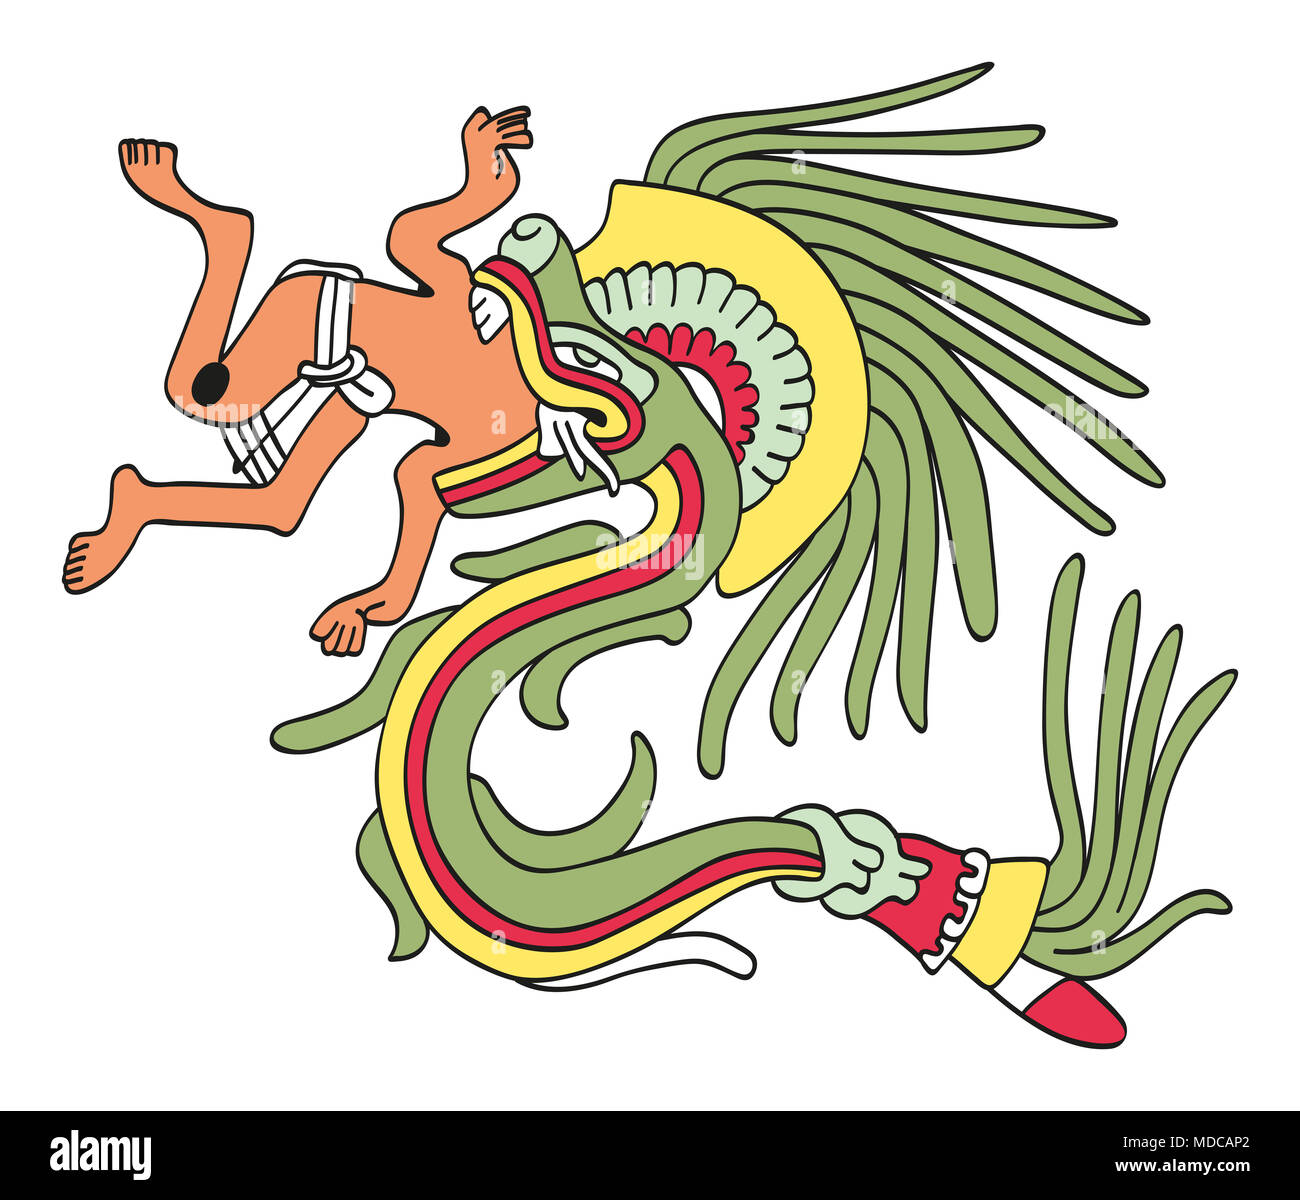 Quetzalcoatl in gefiederte Schlange bilden, essen ein Mann. Gott des Windes und Weisheit. Gottheit wie in einer aztekischen Manuskript Malerei dargestellt. Stockfoto